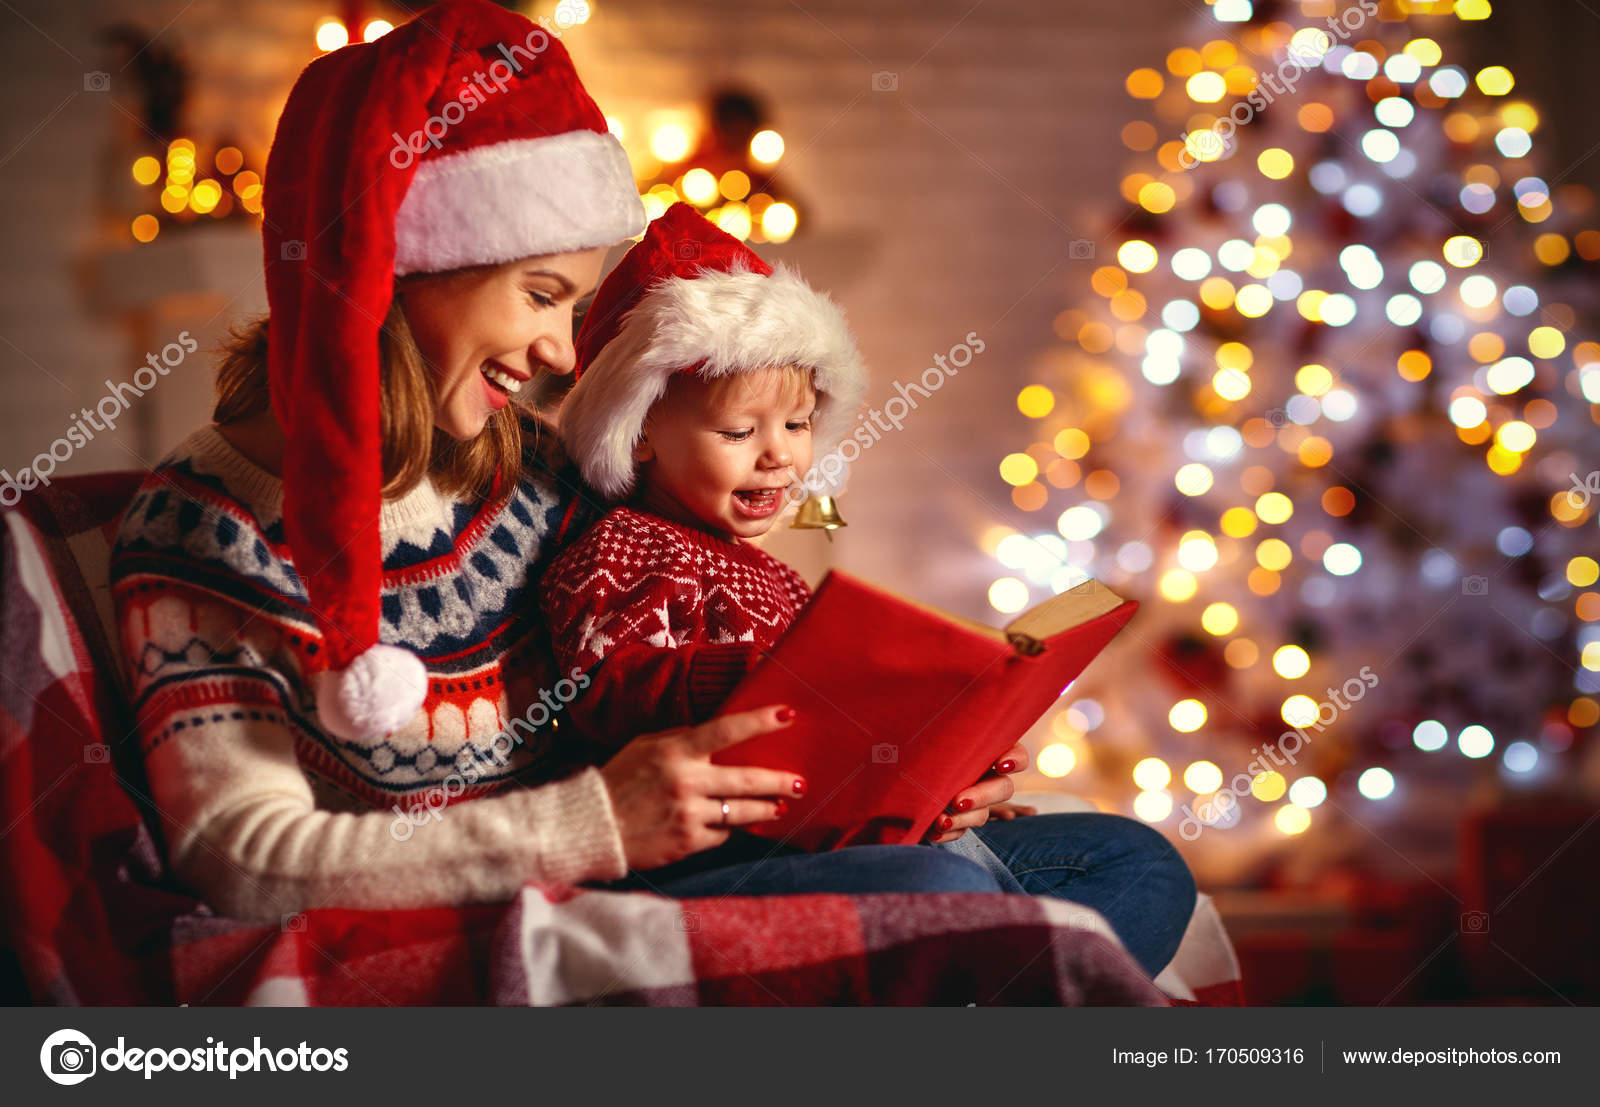 eBooks Kindle: Natal em família: Conto, Mendes, Meg